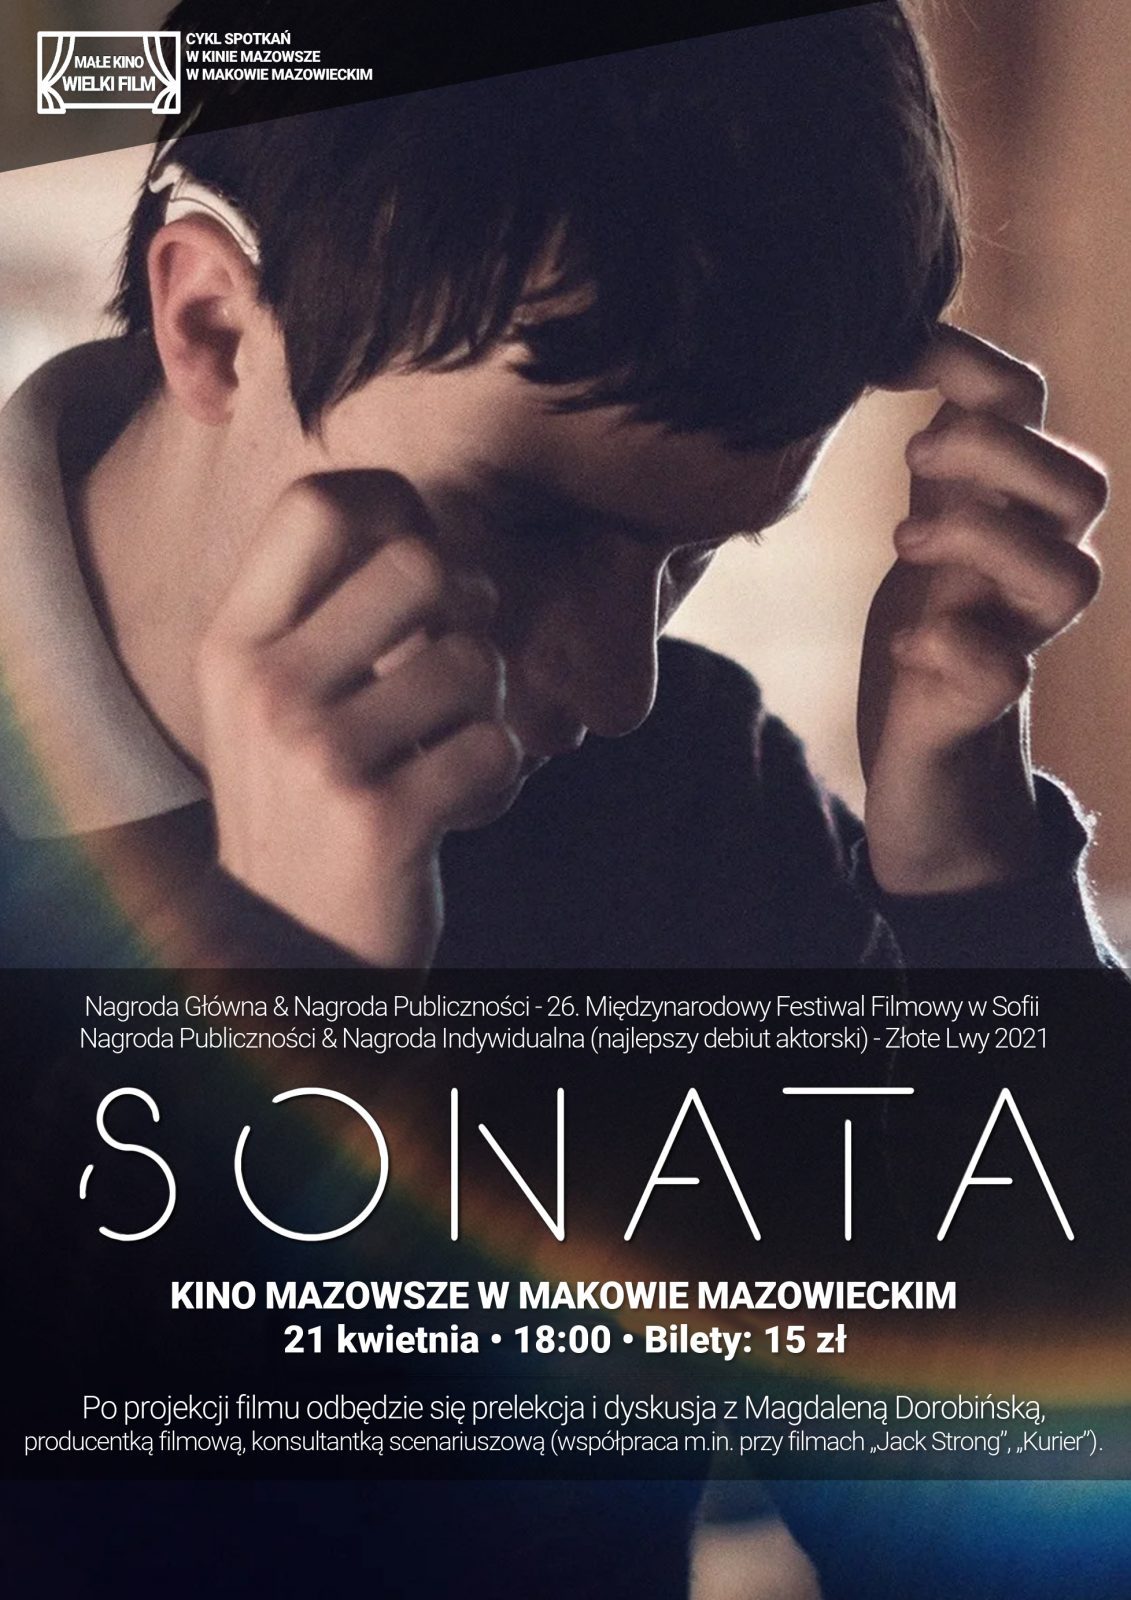 Plakat filmu Sonata w ramach cyklu Małe Kino Wielki Film. 21 kwietniaa godzina 18:00. Cena biletu 15 złotych